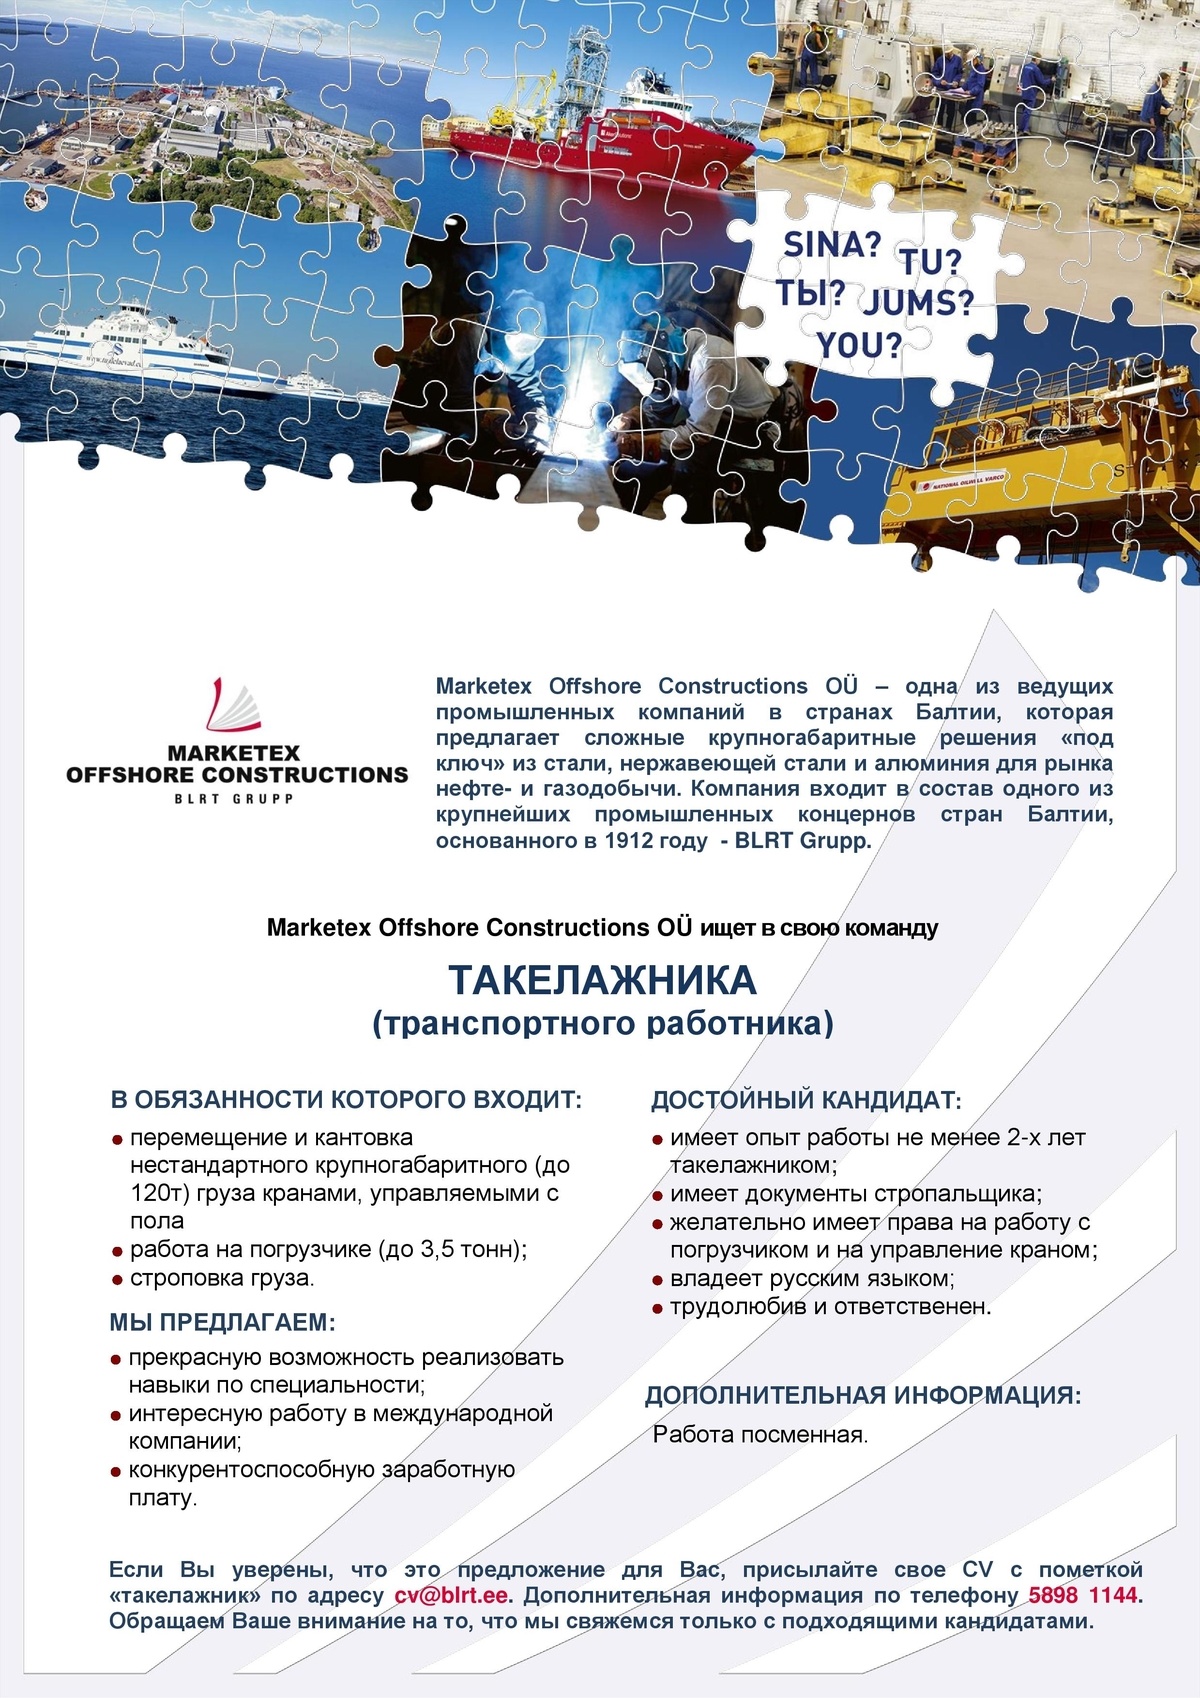 Marketex Offshore Constructions OÜ ТАКЕЛАЖНИК (транспортный работник) 